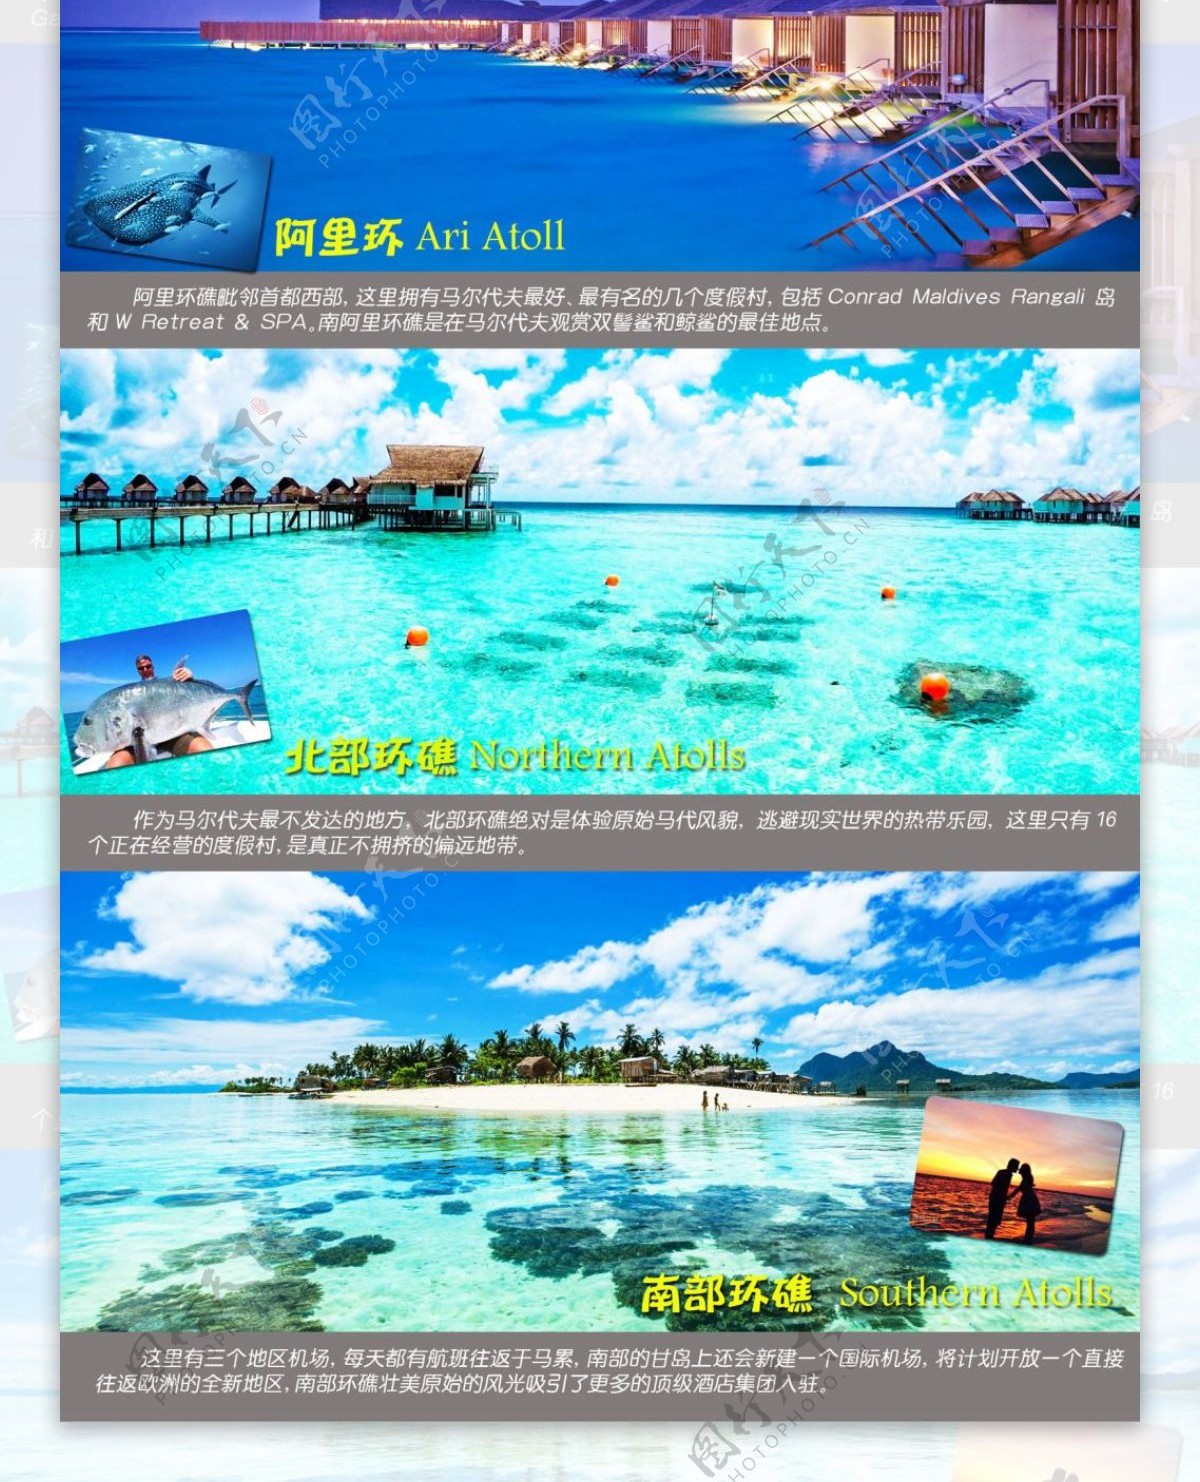 马尔代夫海岛简介旅游简介旅游旅行